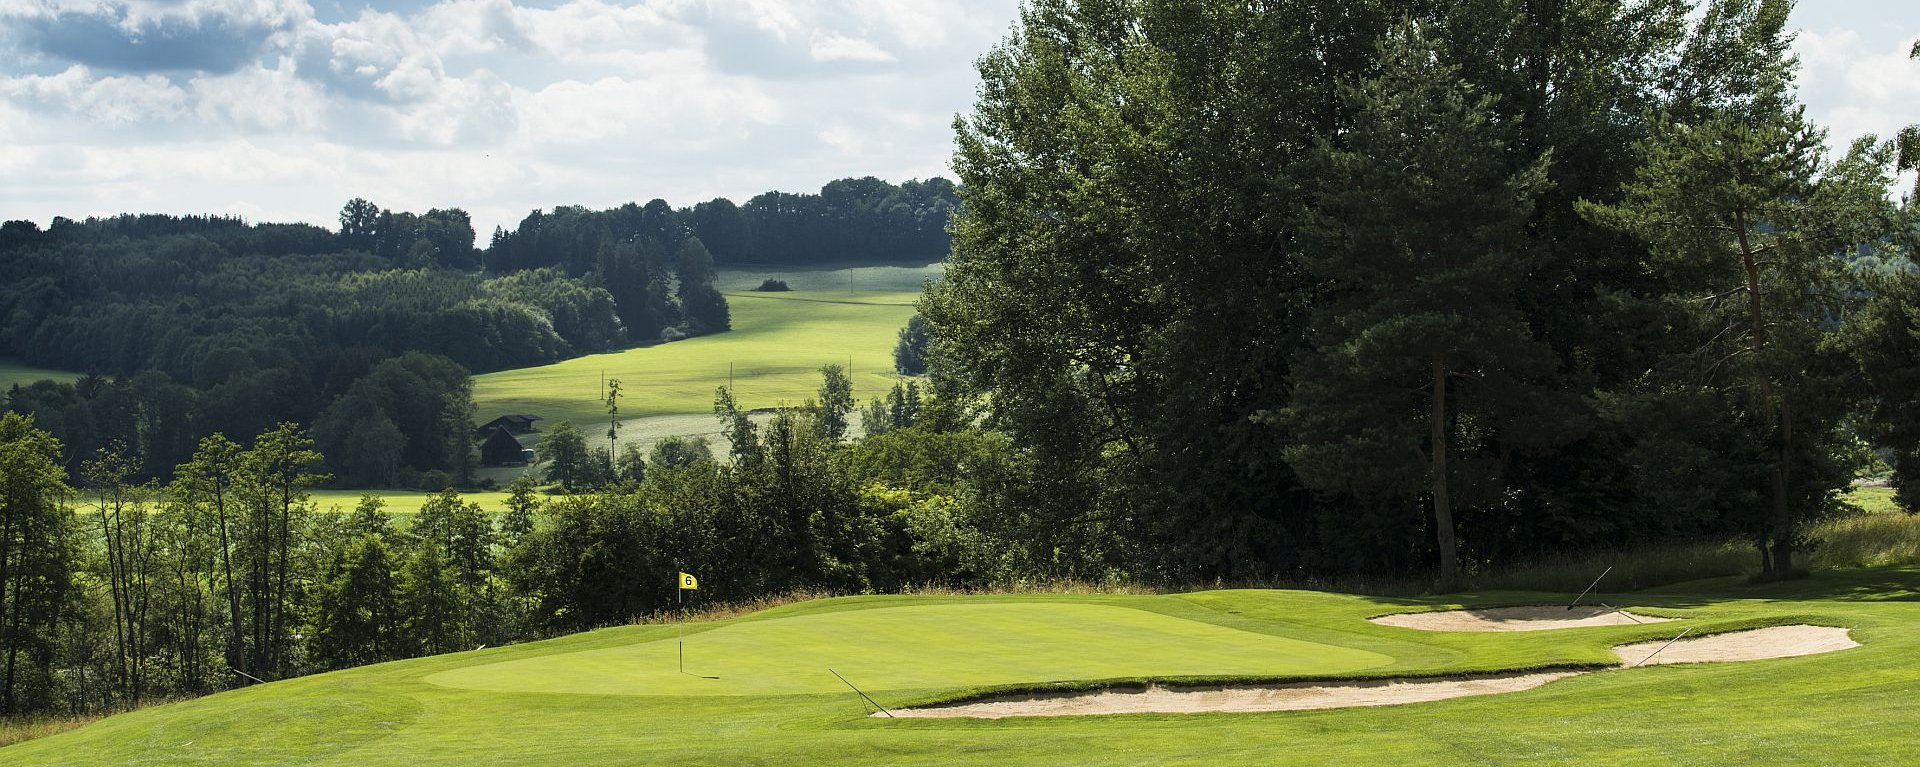 Das Loch 6 auf dem Golfplatz des Allgäuer Golf- und Landclub e.V. mit sanften Hügeln, Bäumen und Buschwerk im Hintergrund (Credit: Stefan von Stengel)